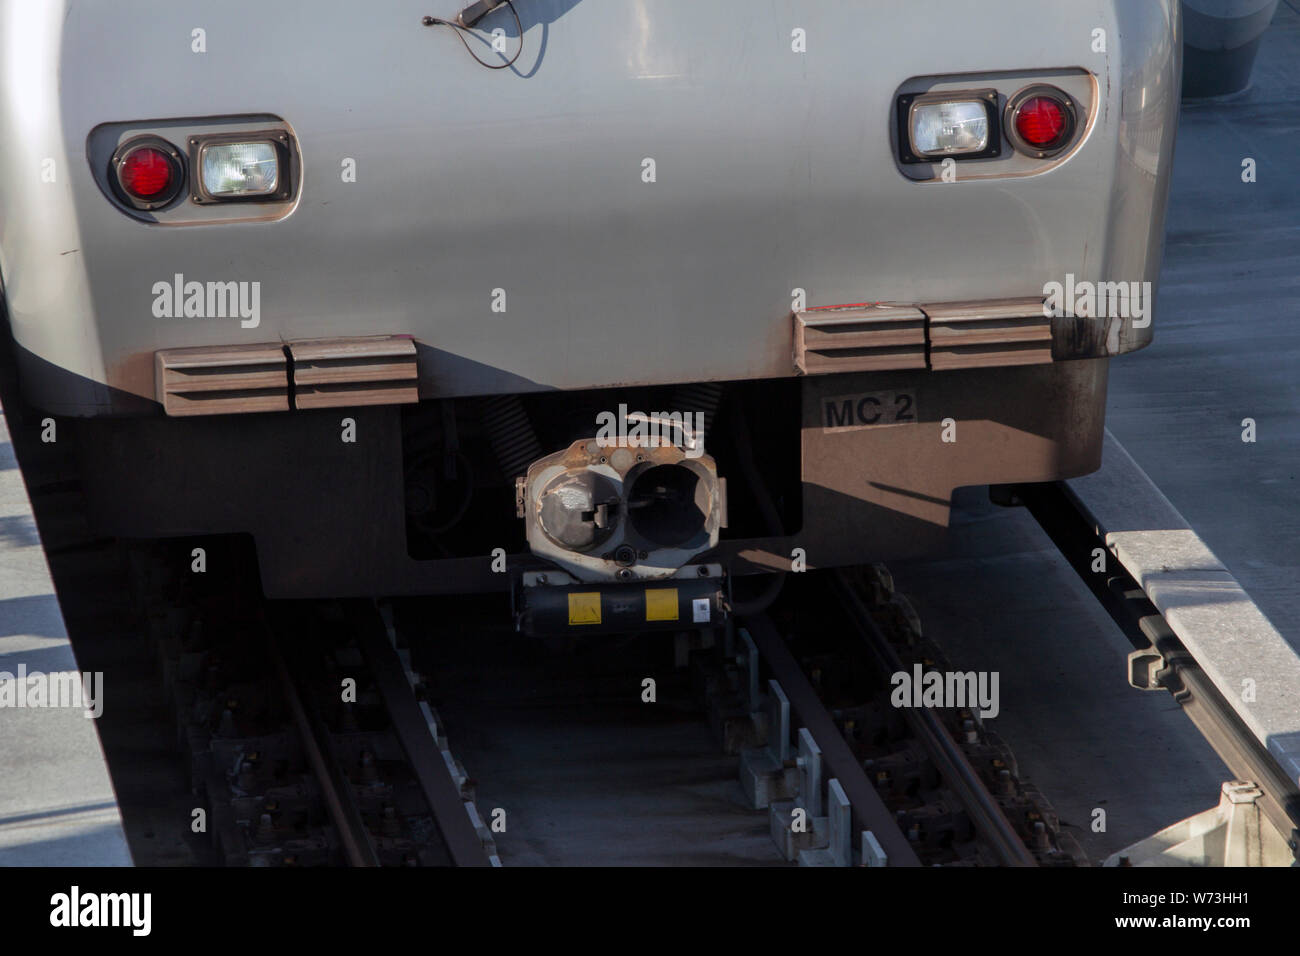 In der Nähe von der U-Bahn Fahrer Kabine Nase, ohne die Kabine Fenster. Power Line gesehen Neben schienen. Stockfoto